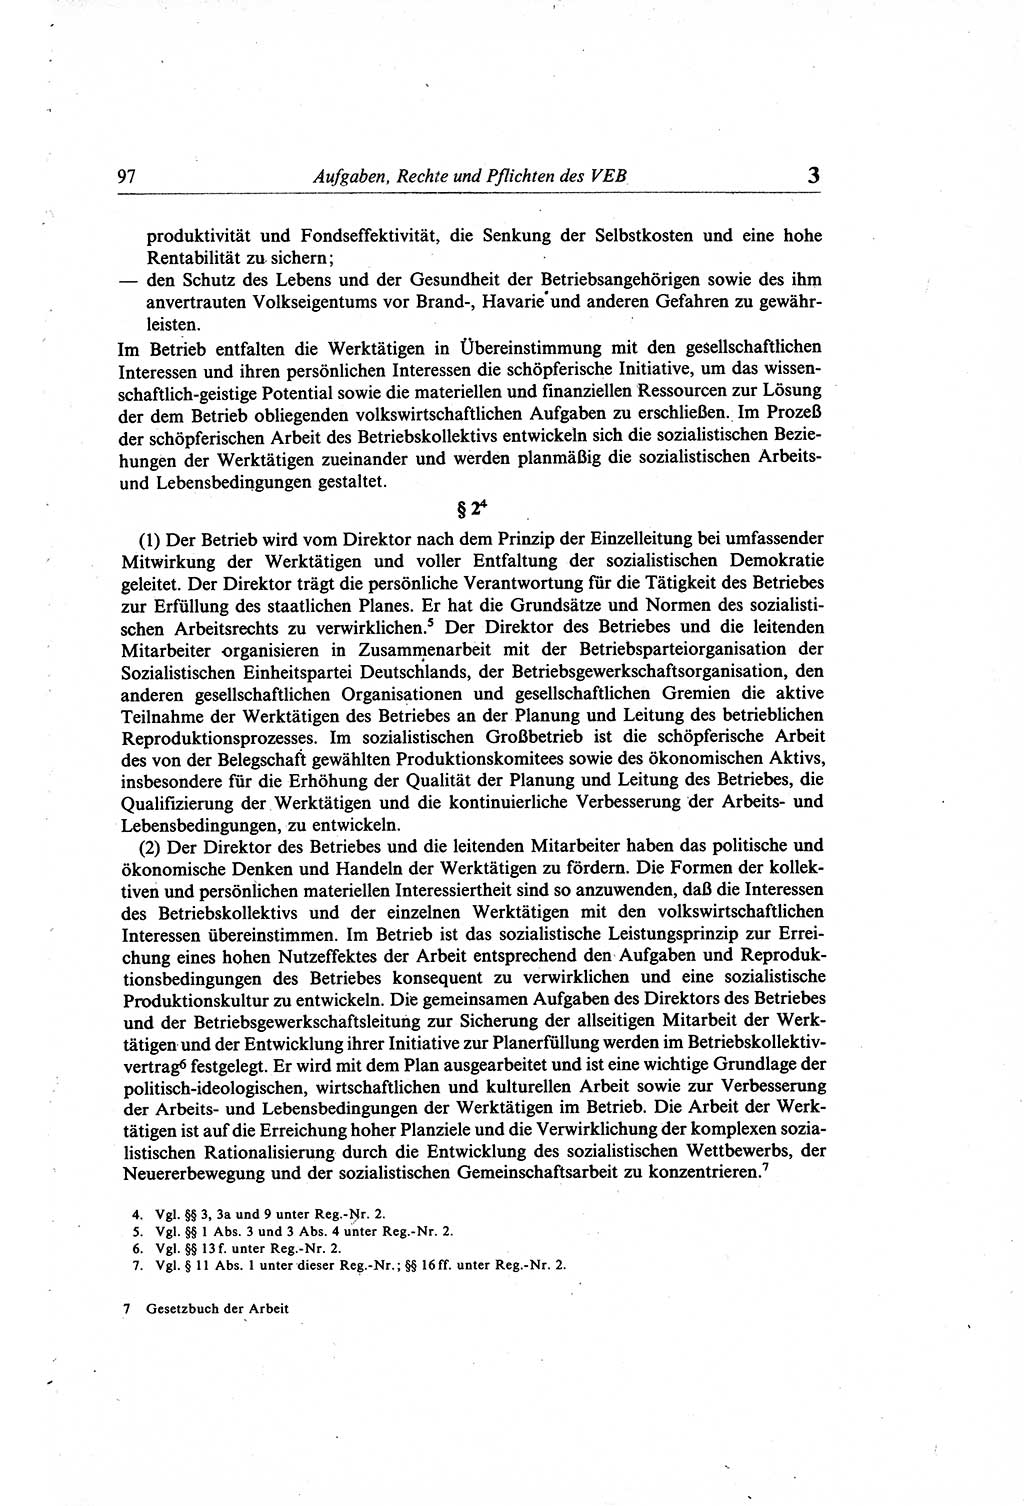 Gesetzbuch der Arbeit (GBA) und andere ausgewählte rechtliche Bestimmungen [Deutsche Demokratische Republik (DDR)] 1968, Seite 97 (GBA DDR 1968, S. 97)